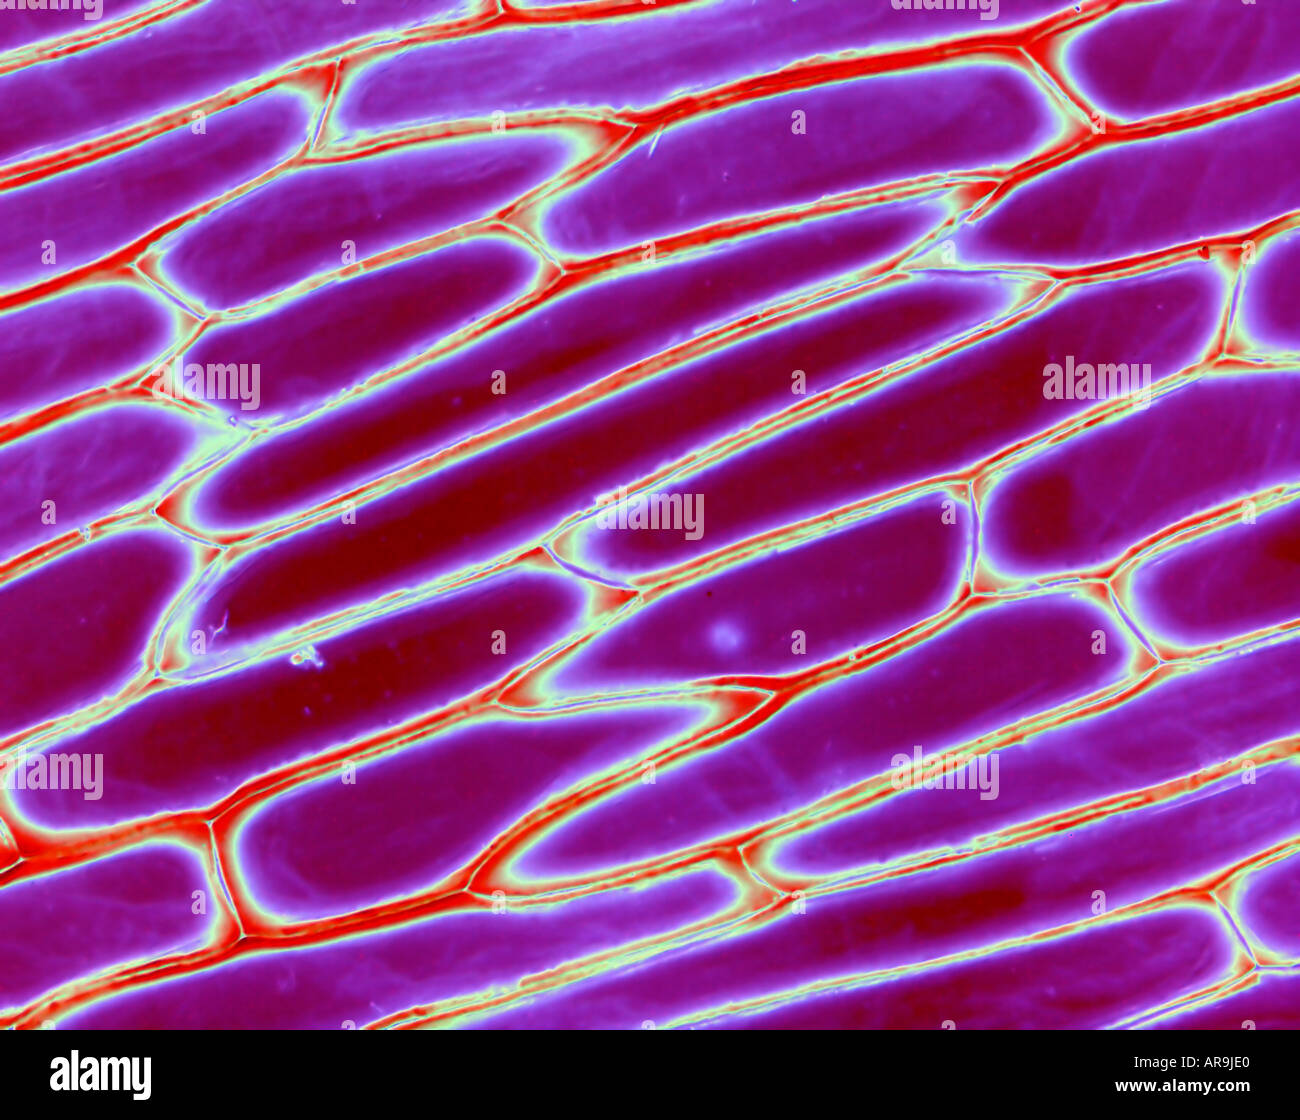 Onion skin in sezione trasversale al microscopio (Vista) Foto Stock